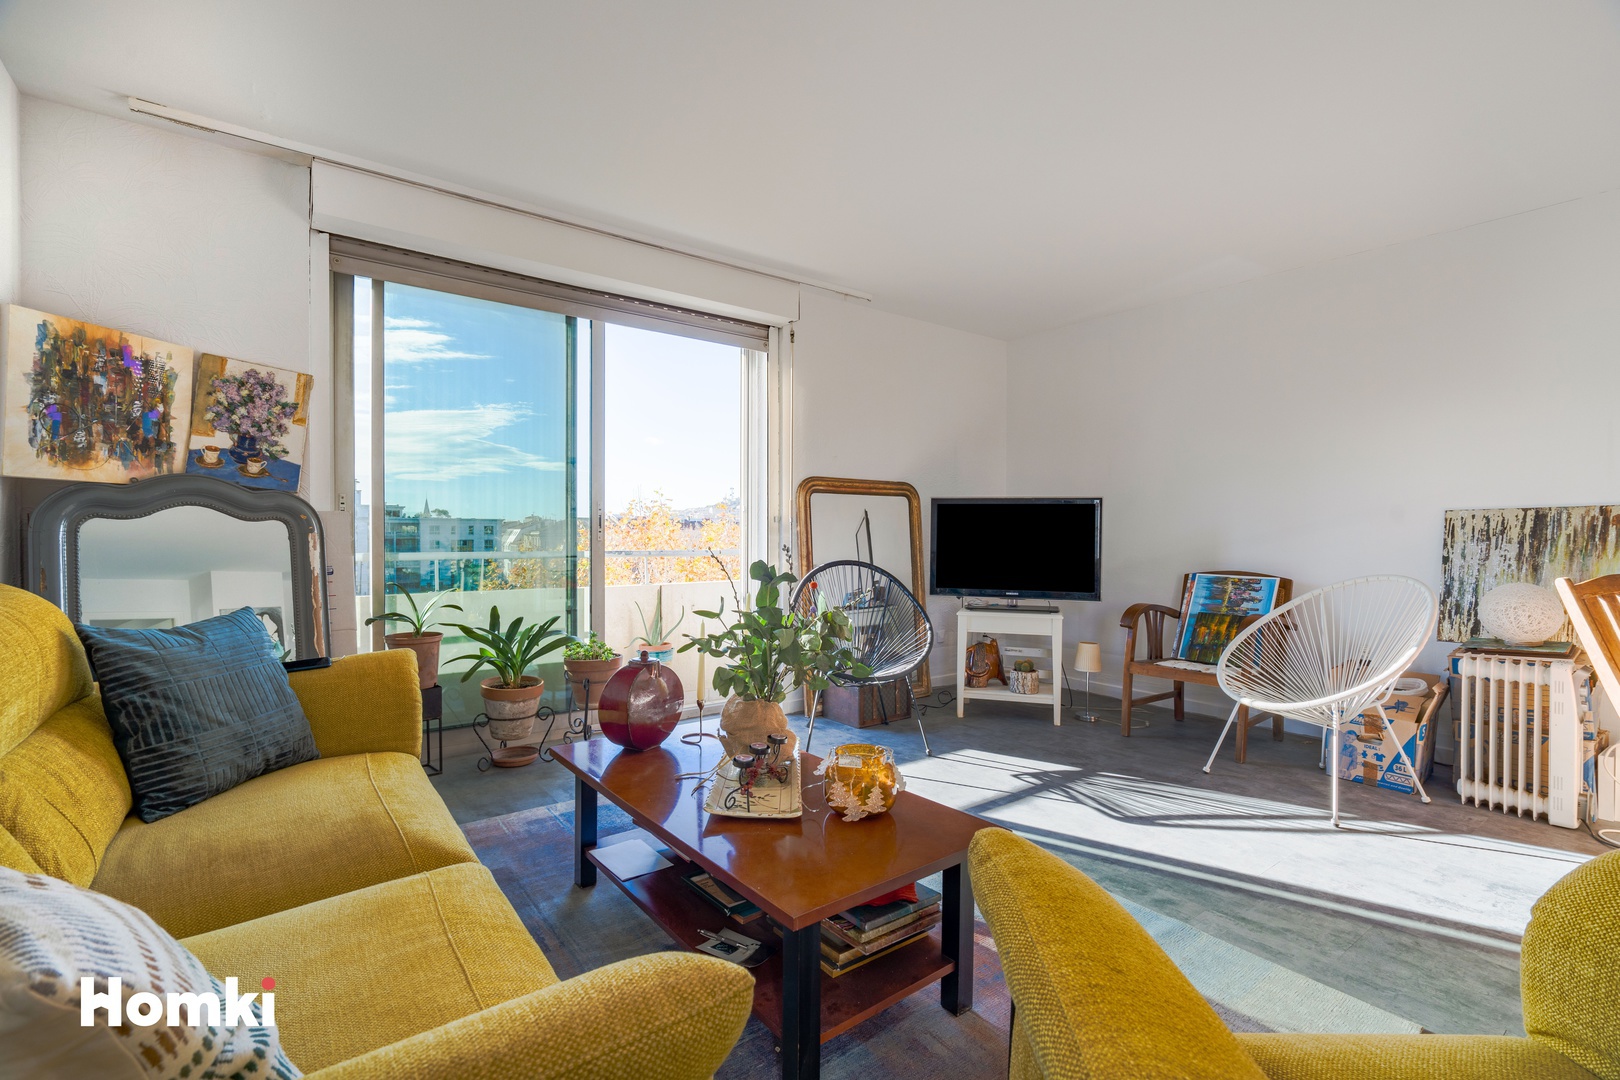 Homki - Vente Appartement  de 66.0 m² à Sète 34200